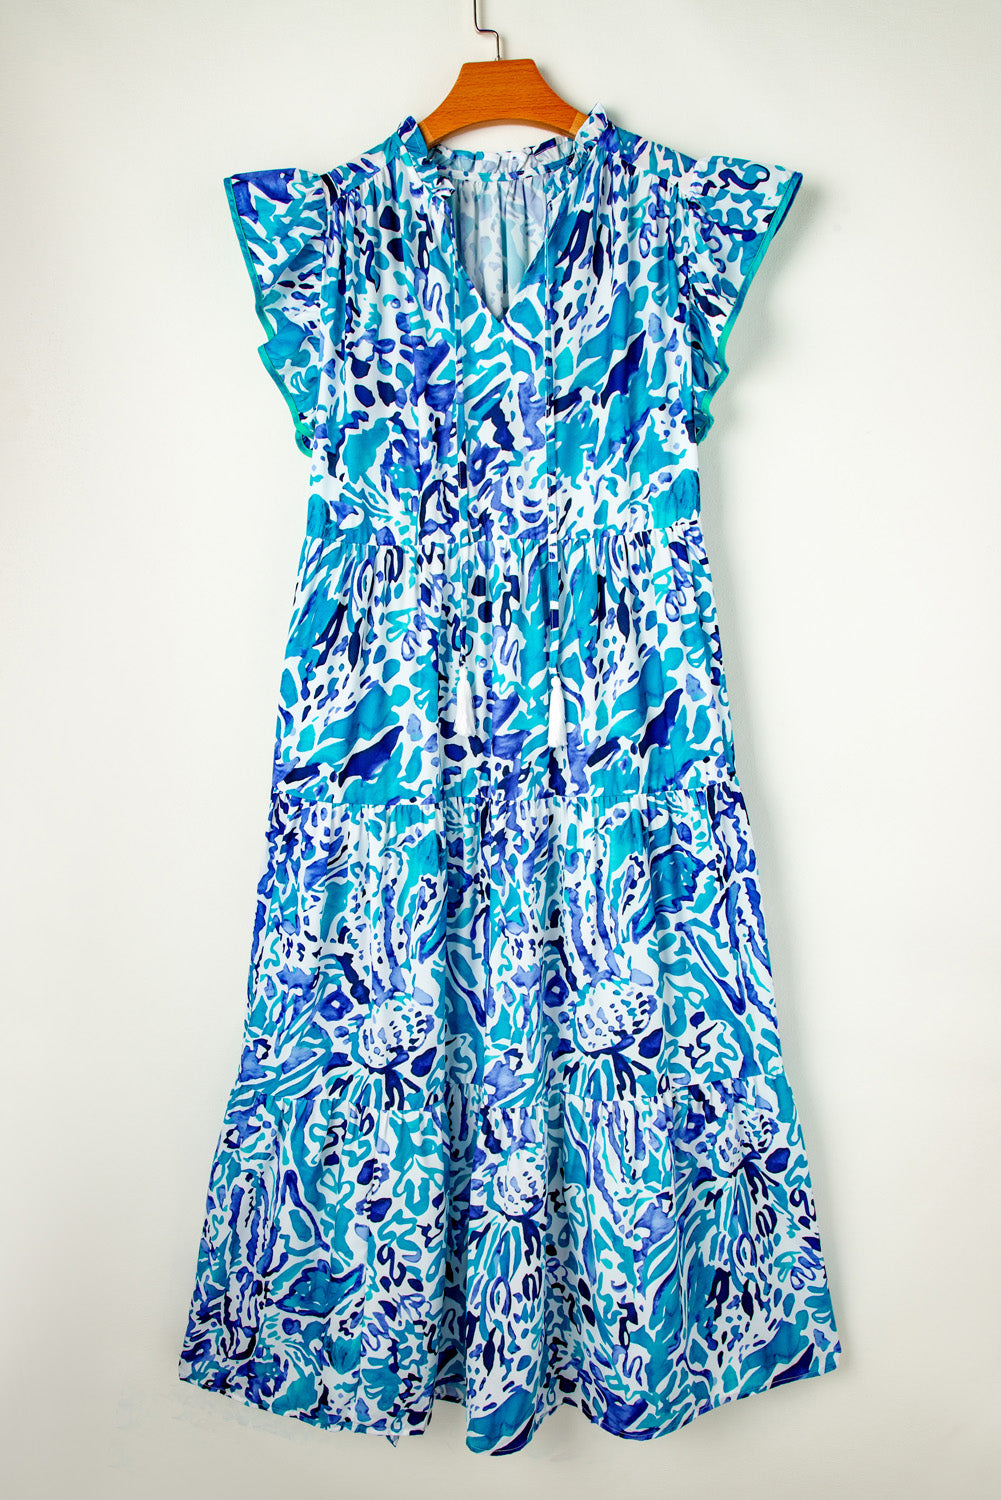 Himmelblaues, gestuftes langes Kleid mit abstraktem Aufdruck, geteiltem Ausschnitt, Rüschenärmeln